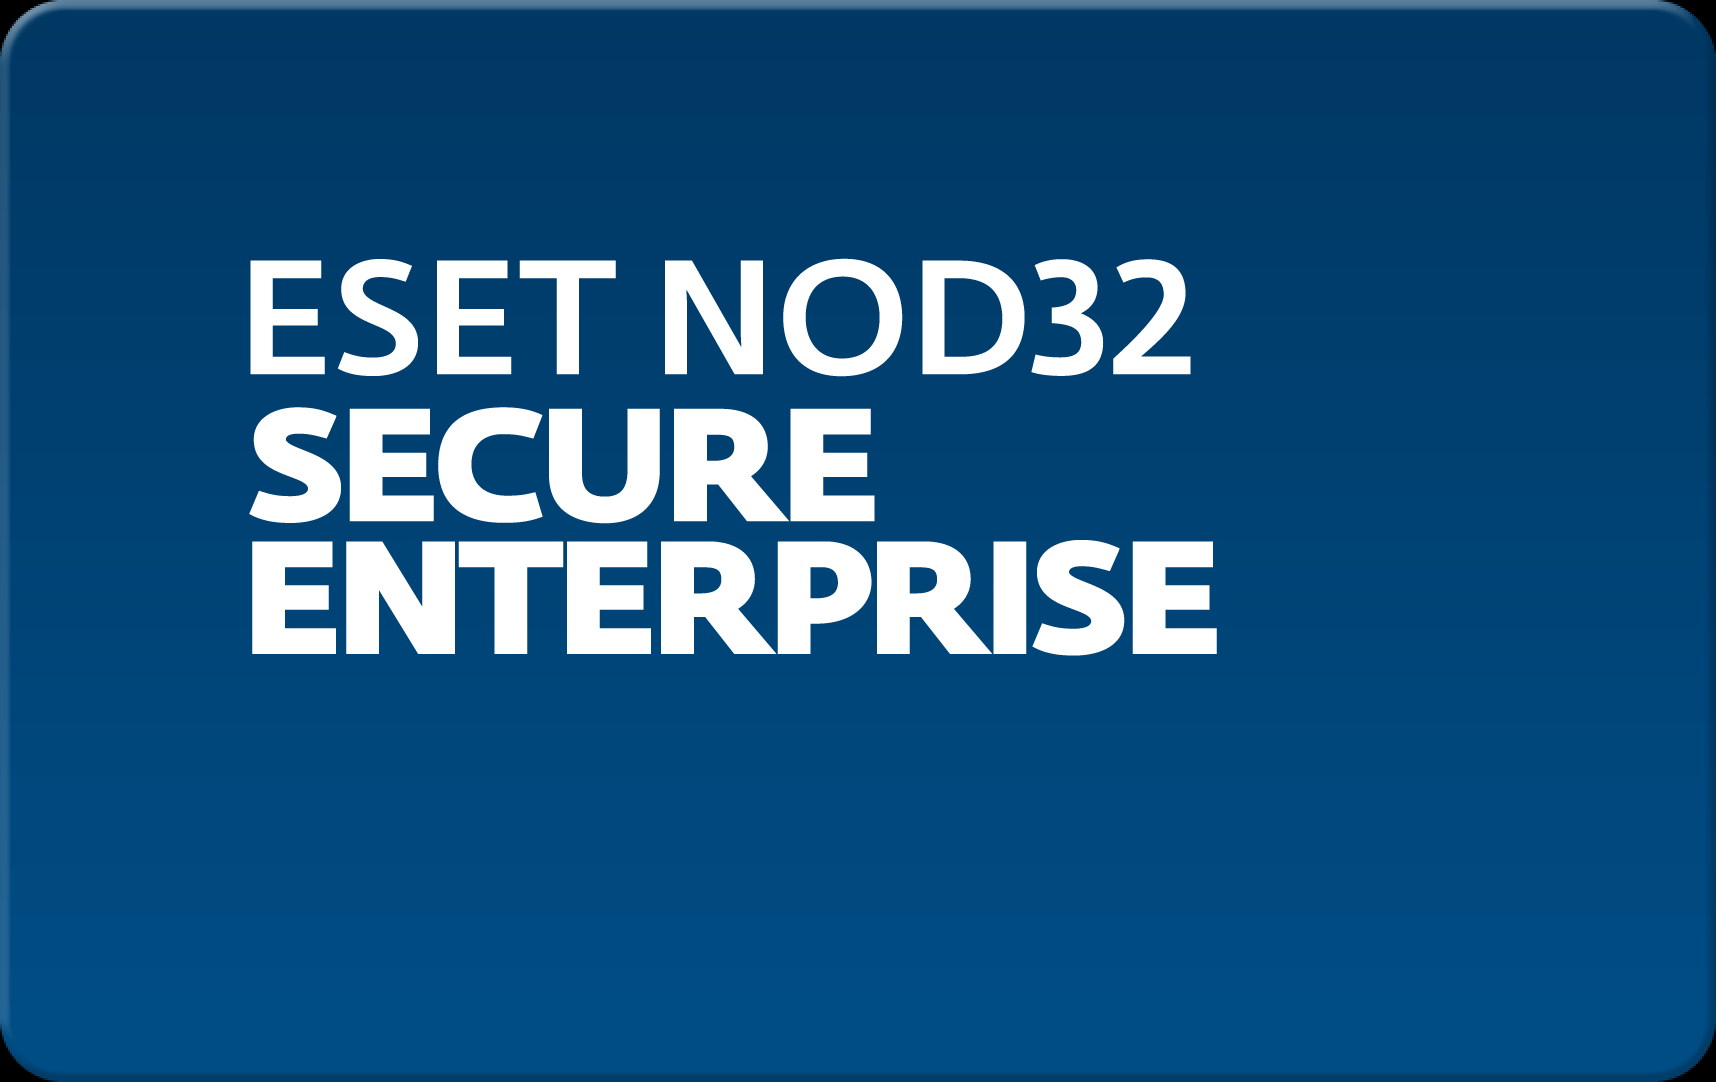        Eset NOD32 Secure Enterprise  193 